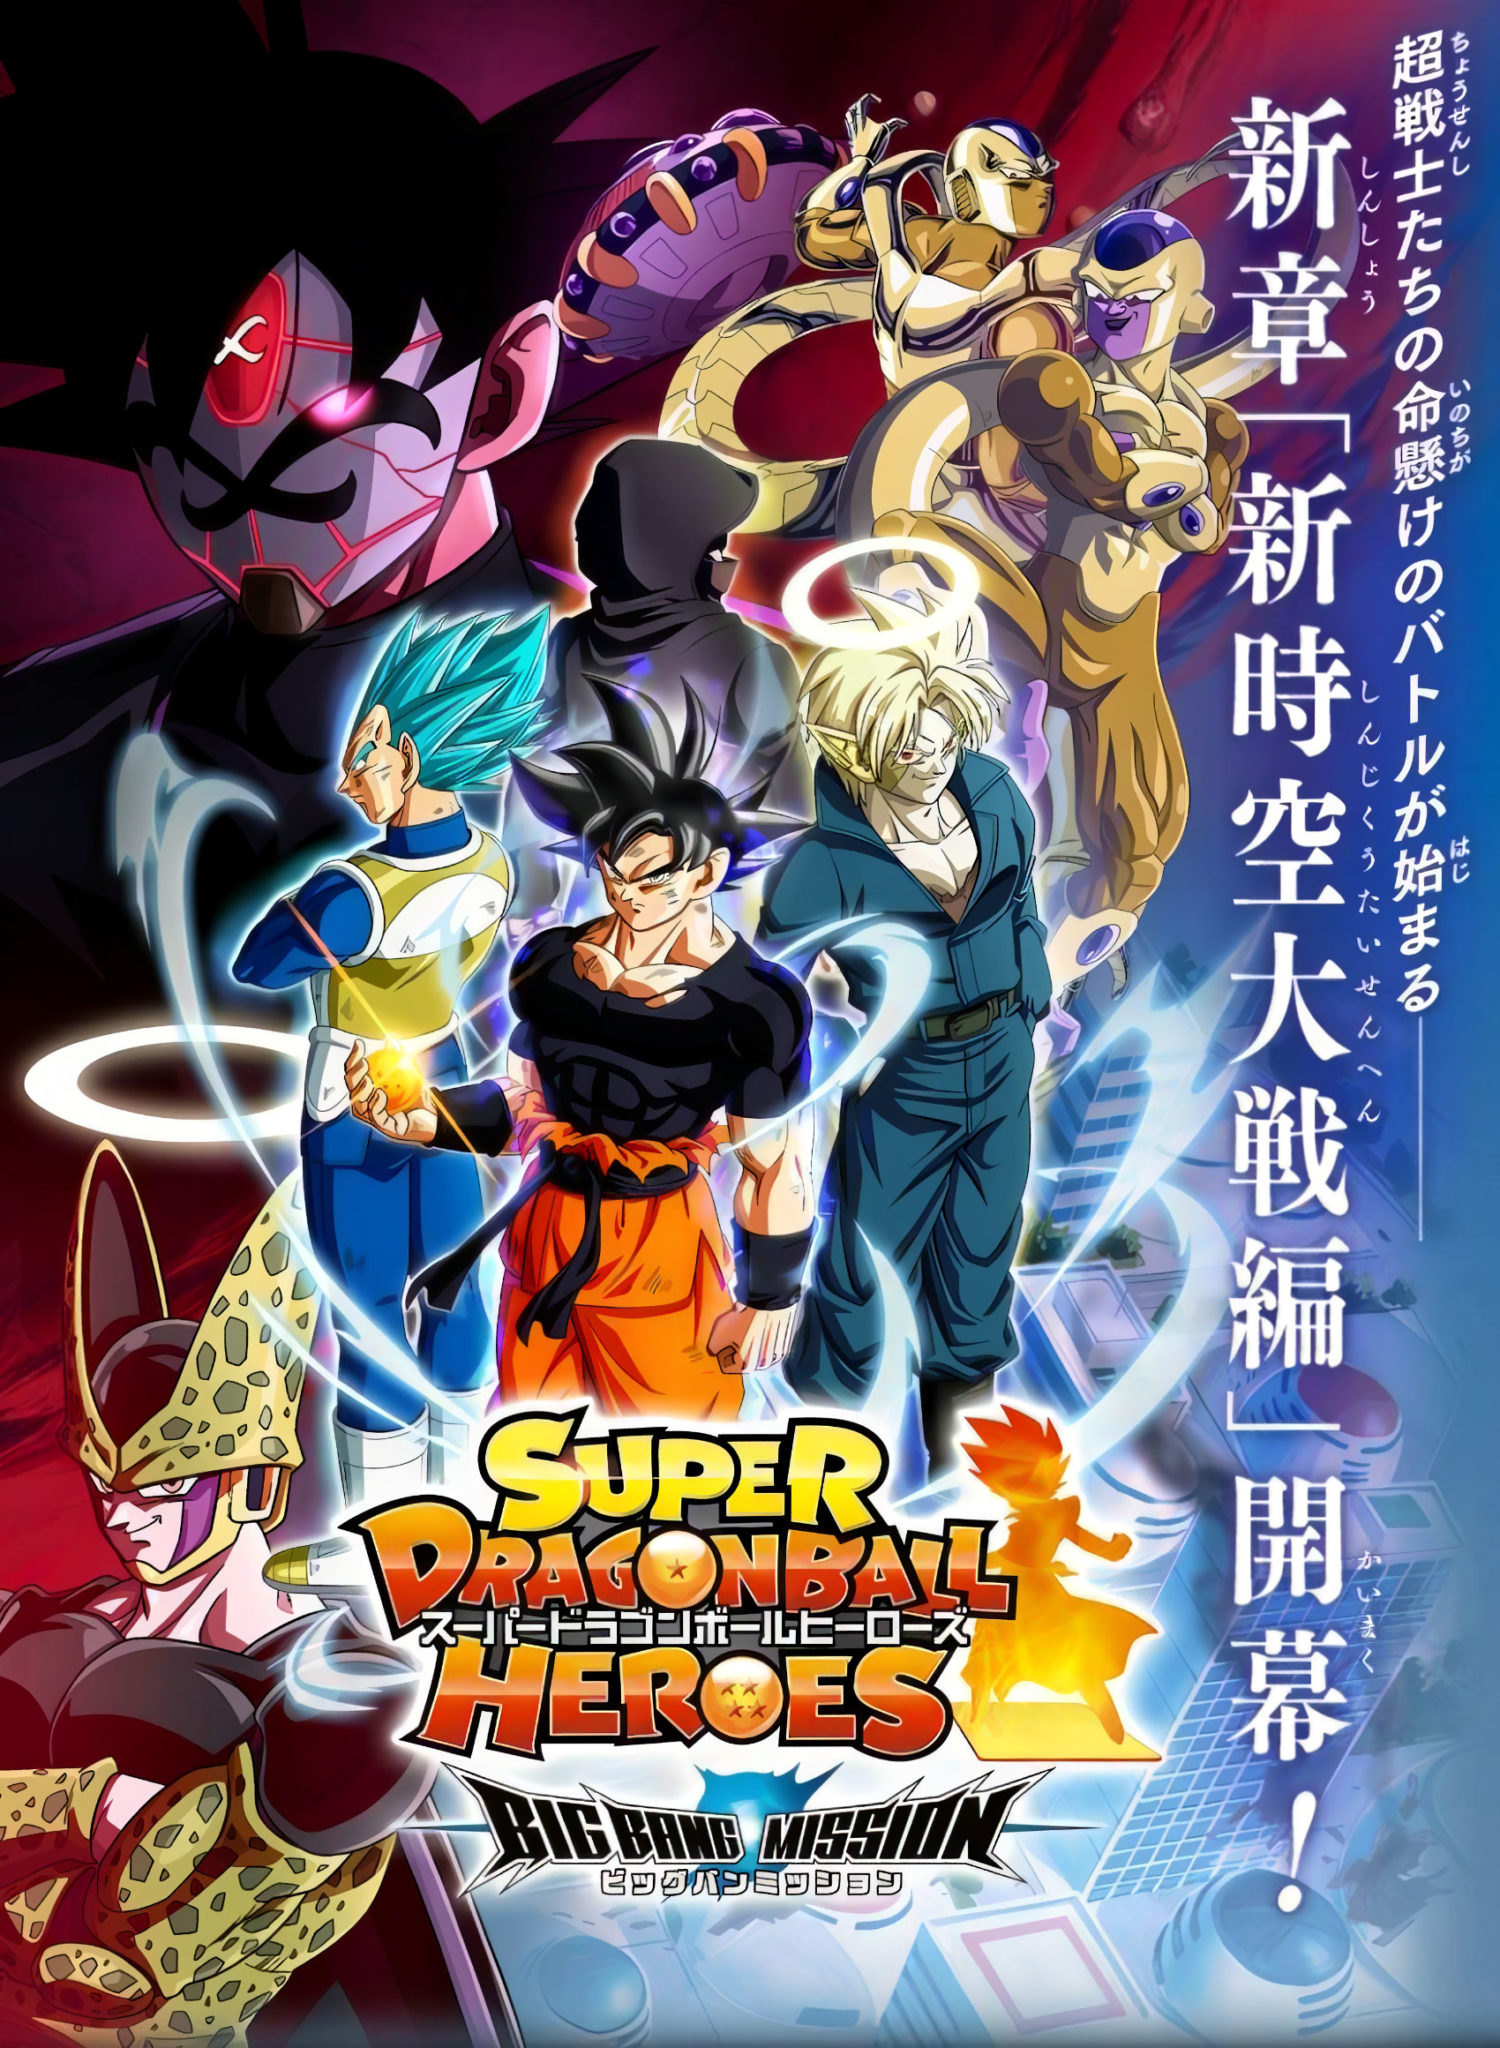 Super Dragon Ball Heroes chuẩn bị ra mắt tập mới, hứa hẹn những cuộc chiến bùng nổ và mãn nhãn - Ảnh 1.